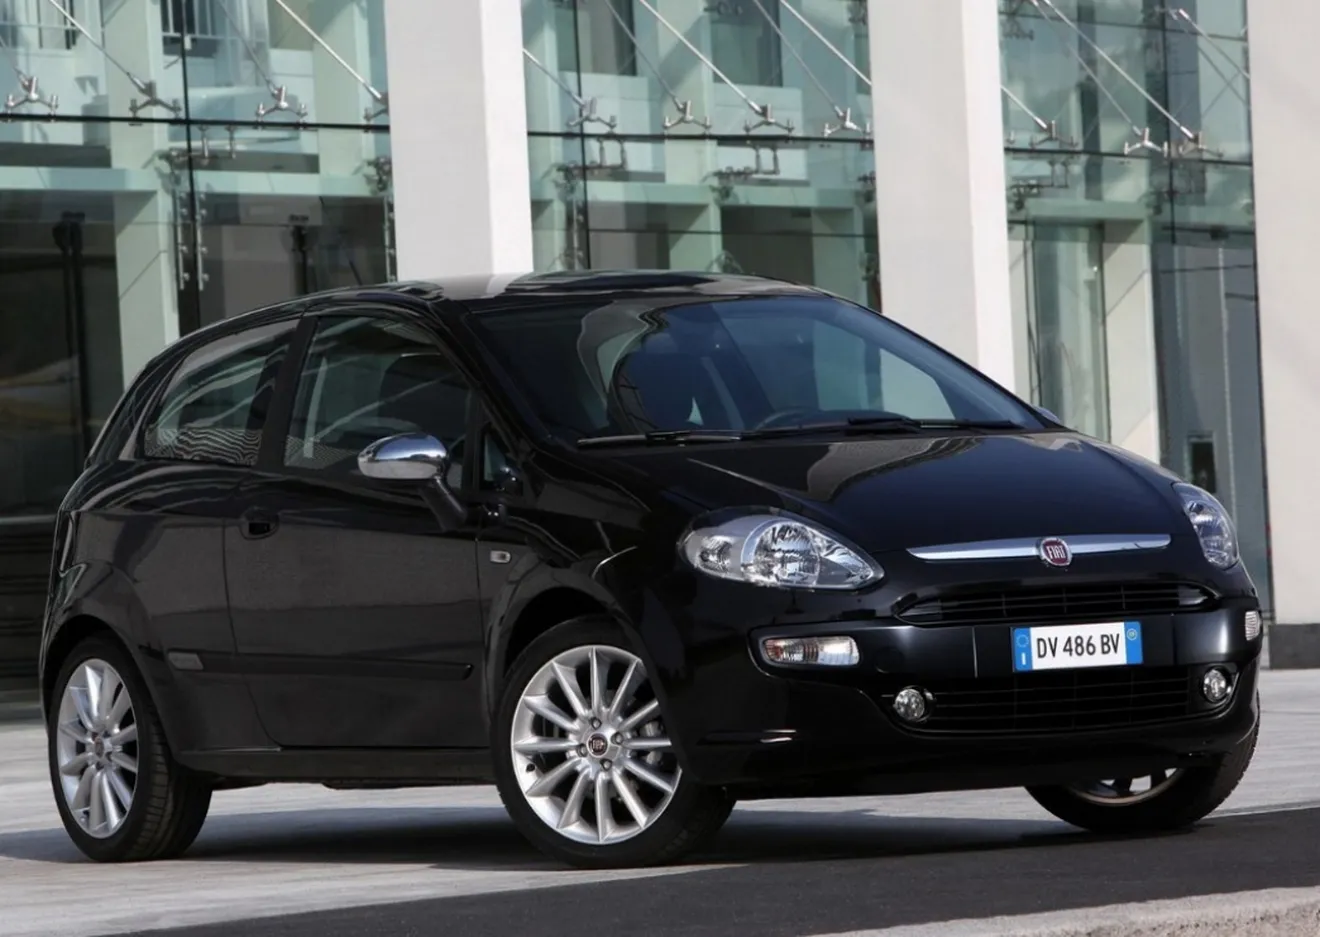 Italia - Julio 2014: Fiat Punto, Renault Clio y Dacia Duster, protagonistas del mes